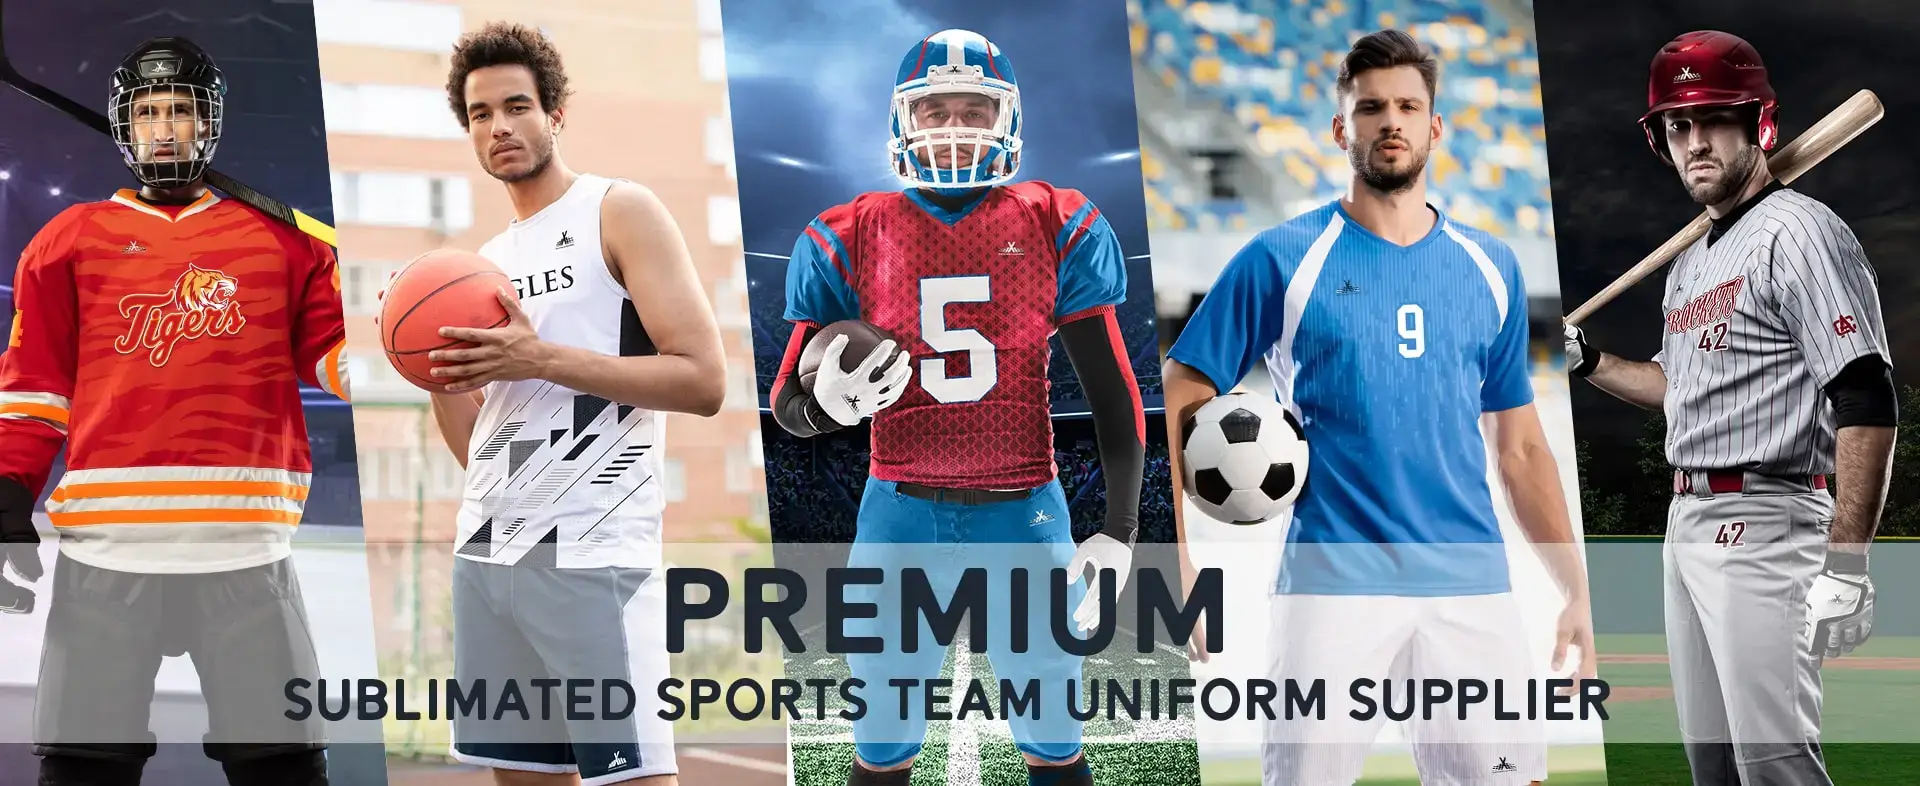 Premium Sublimation Sports Team Uniform Supplier